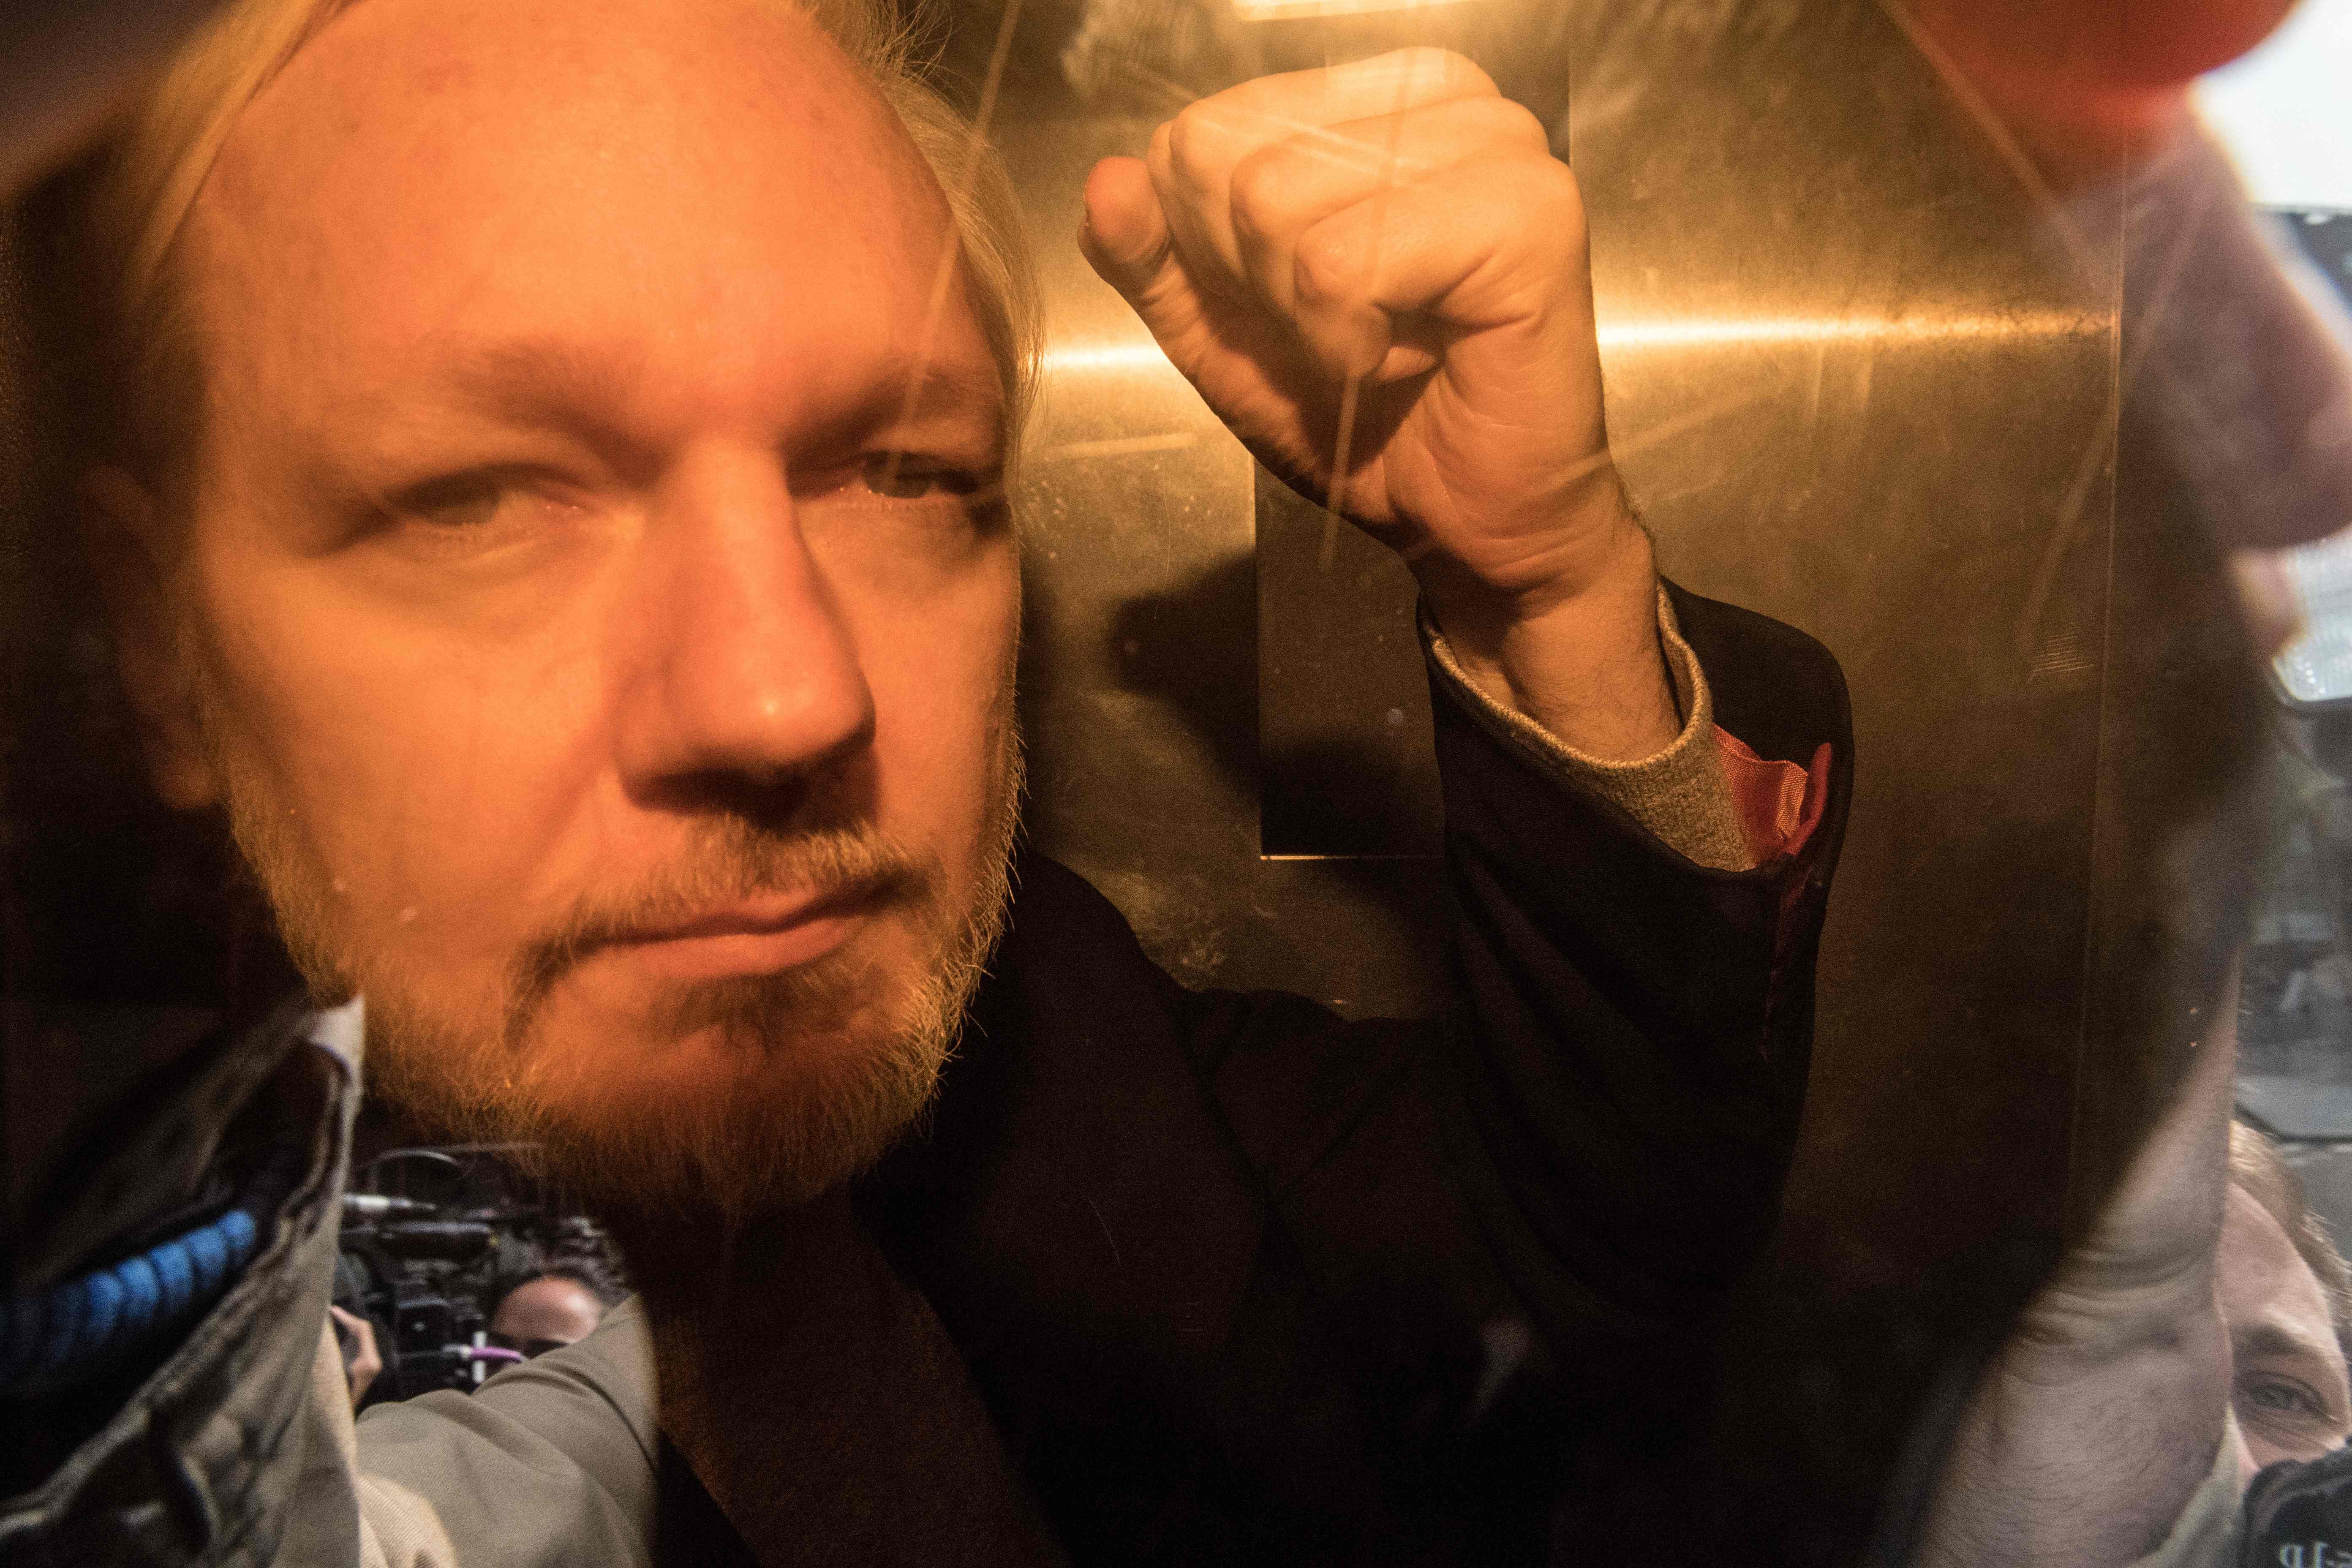 El sitio Wikileaks afirmó este lunes que Julian Assange "está en libertad" luego de que se informara de una supuesta declaración de culpabilidad por parte del australiano a la justicia estadounidense.  (Foto Prensa Libre: Daniel LEAL / AFP)